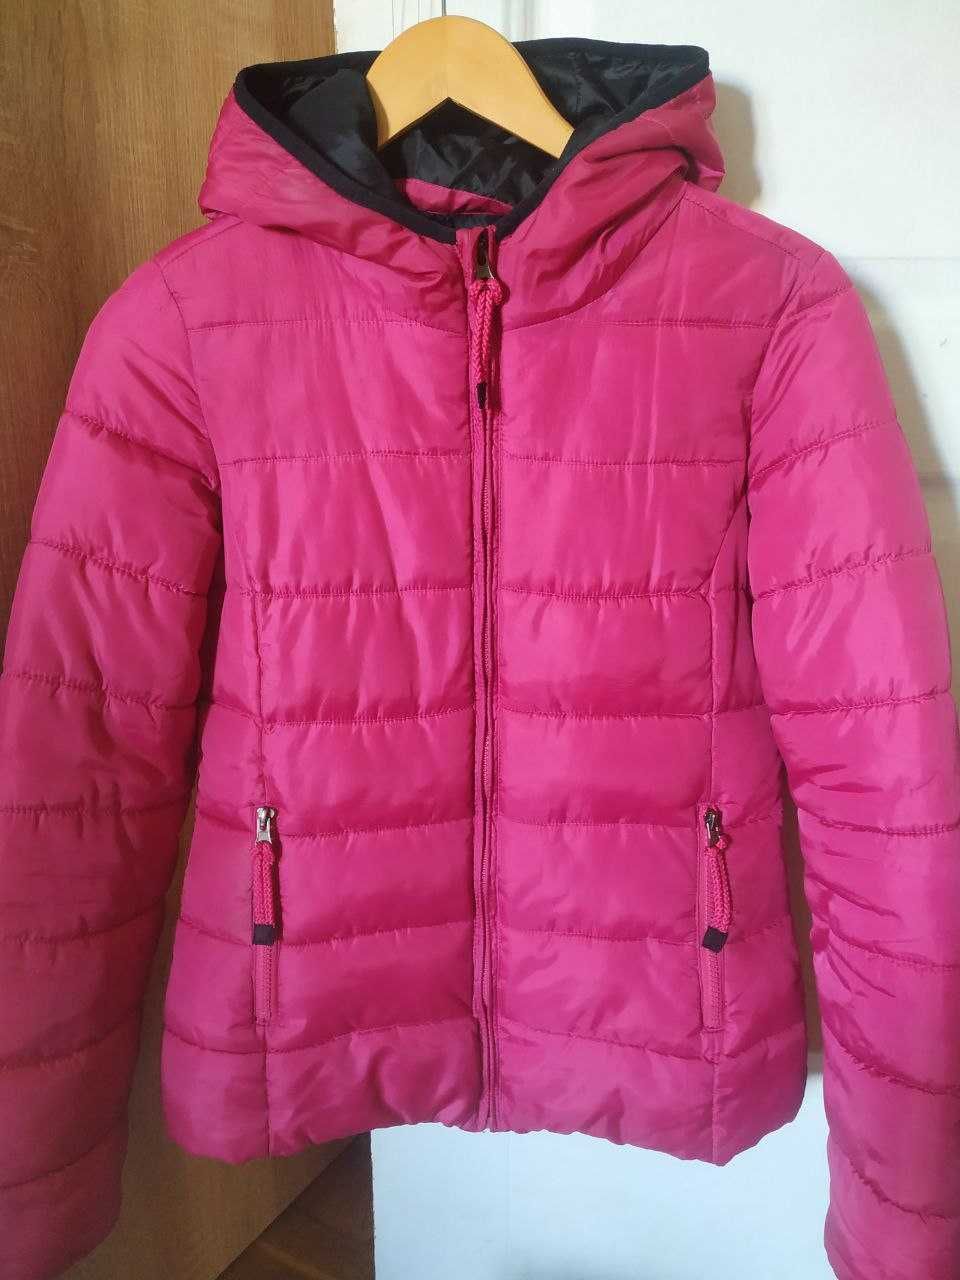 Куртка зимняя женская, пуховик очень теплый, размер S